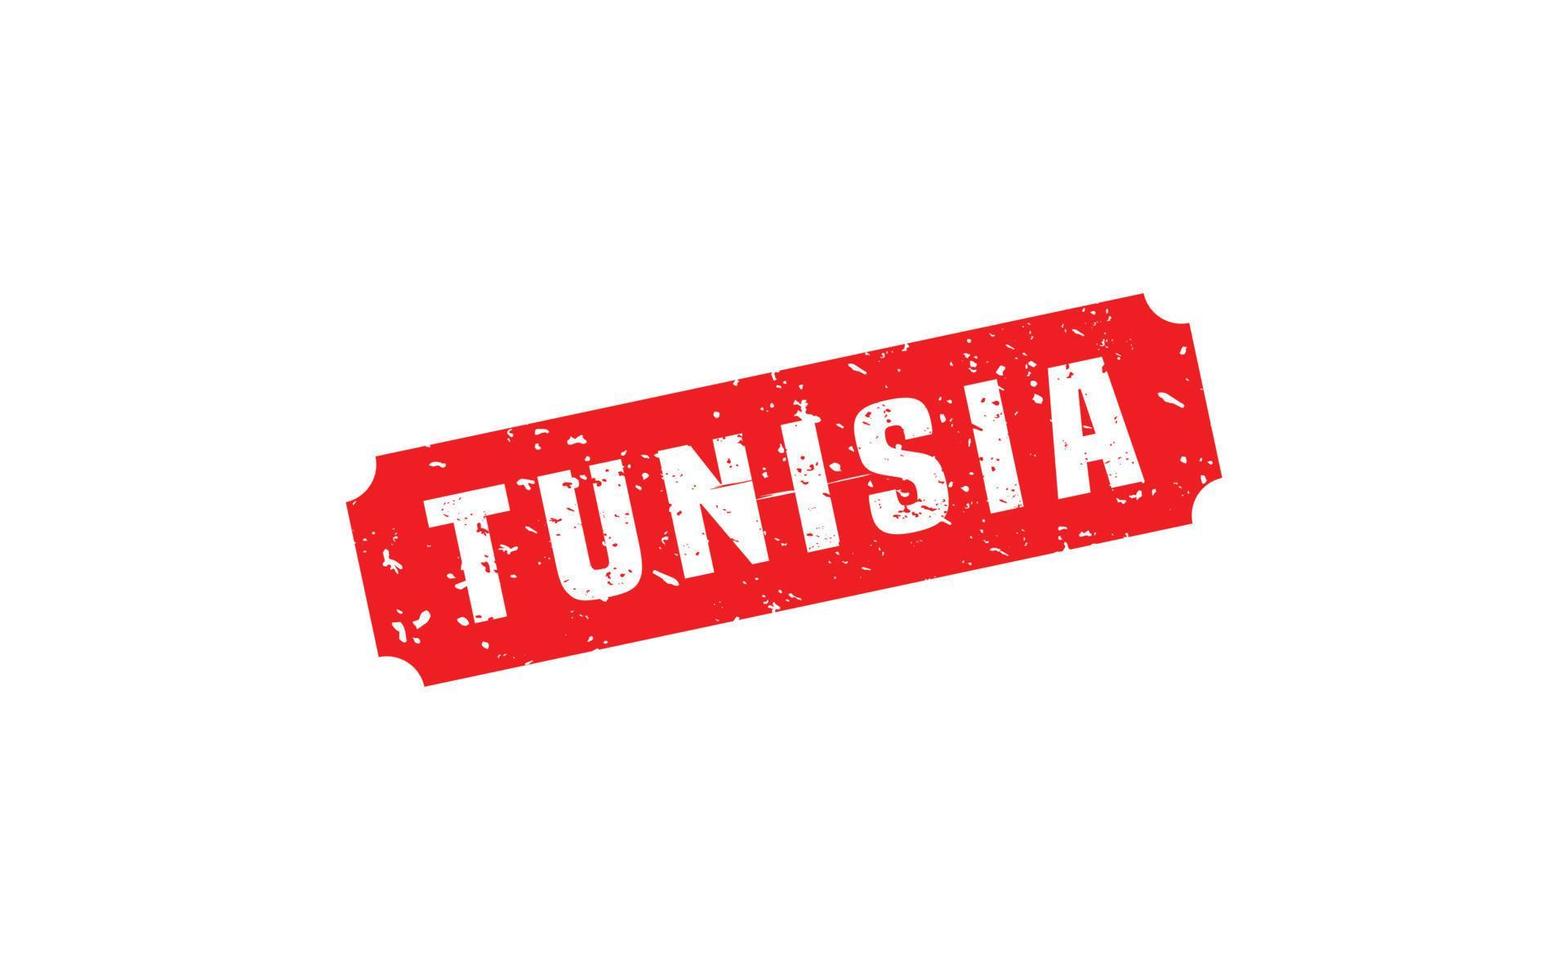 Tunesien Briefmarke Gummi mit Grunge Stil auf Weiß Hintergrund vektor